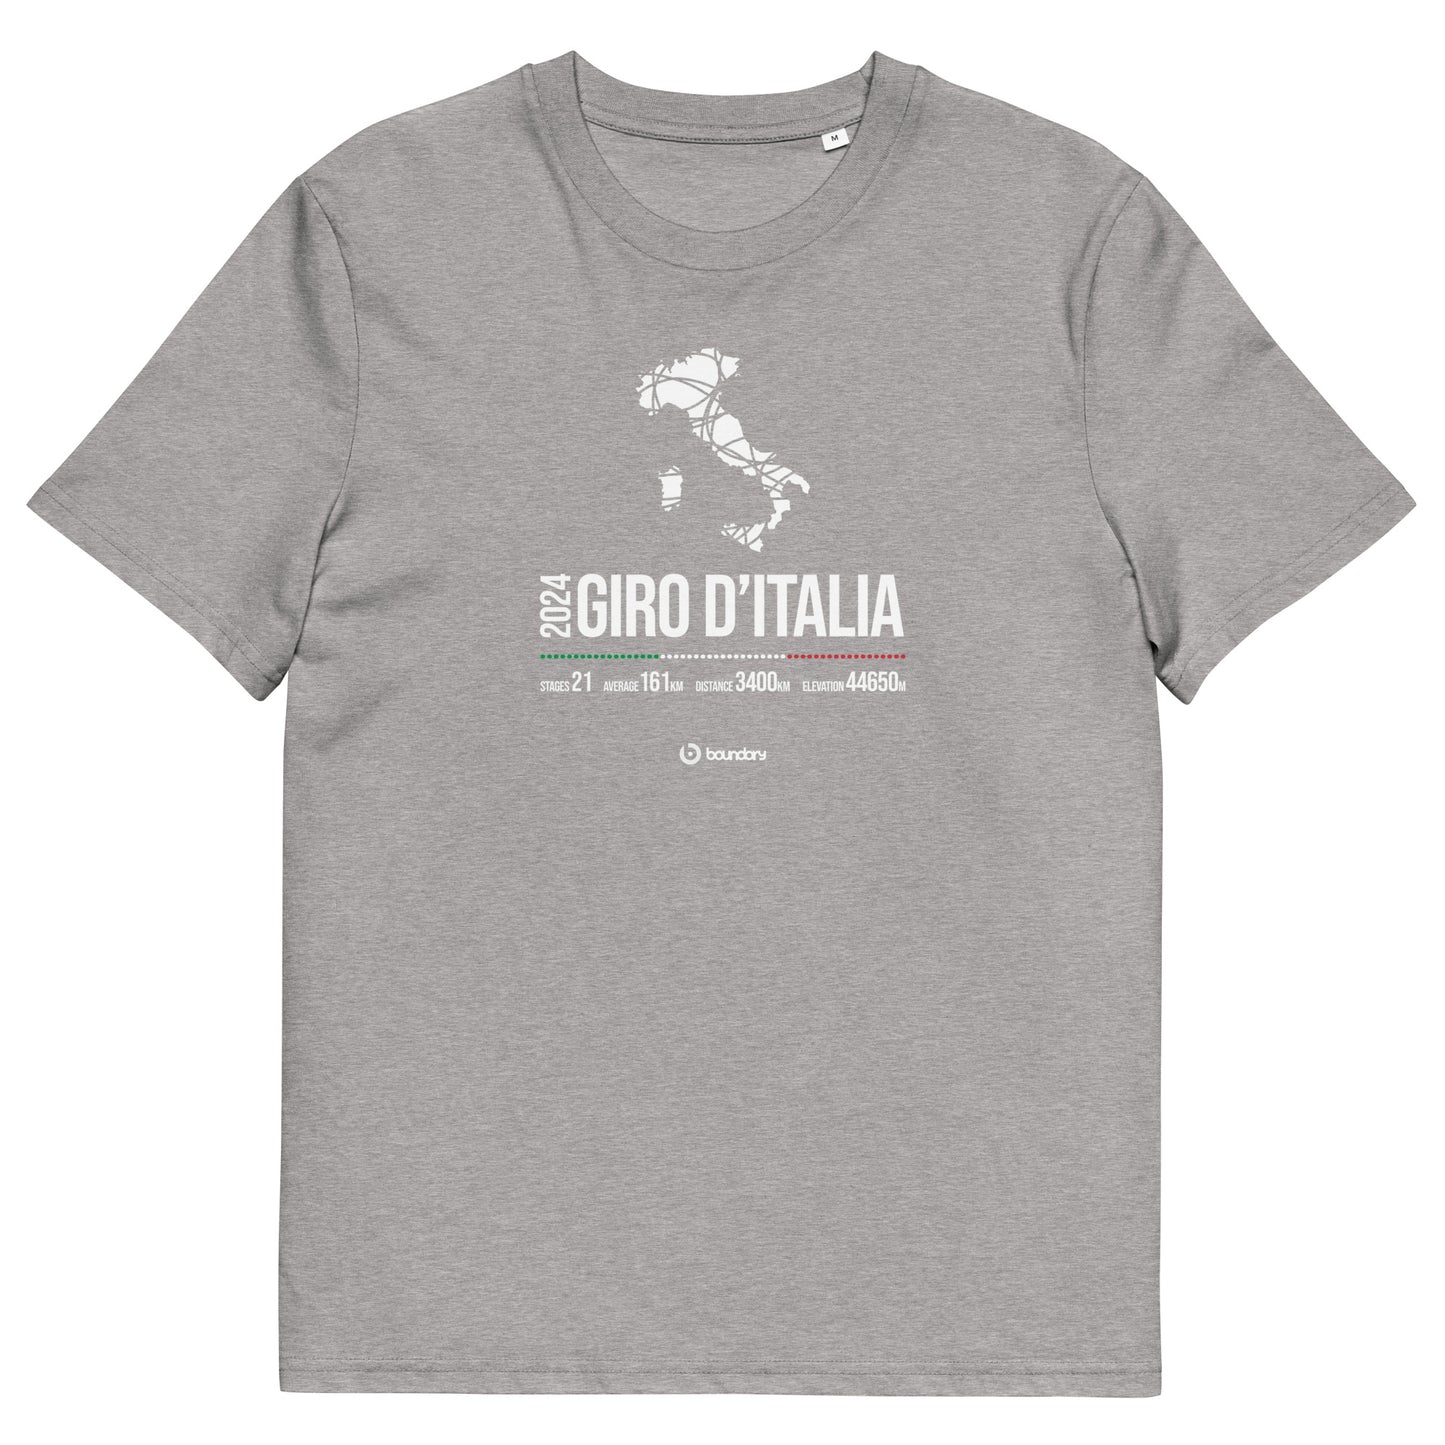 Giro d'Italia Grand Tour cycling organic cotton t-shirt